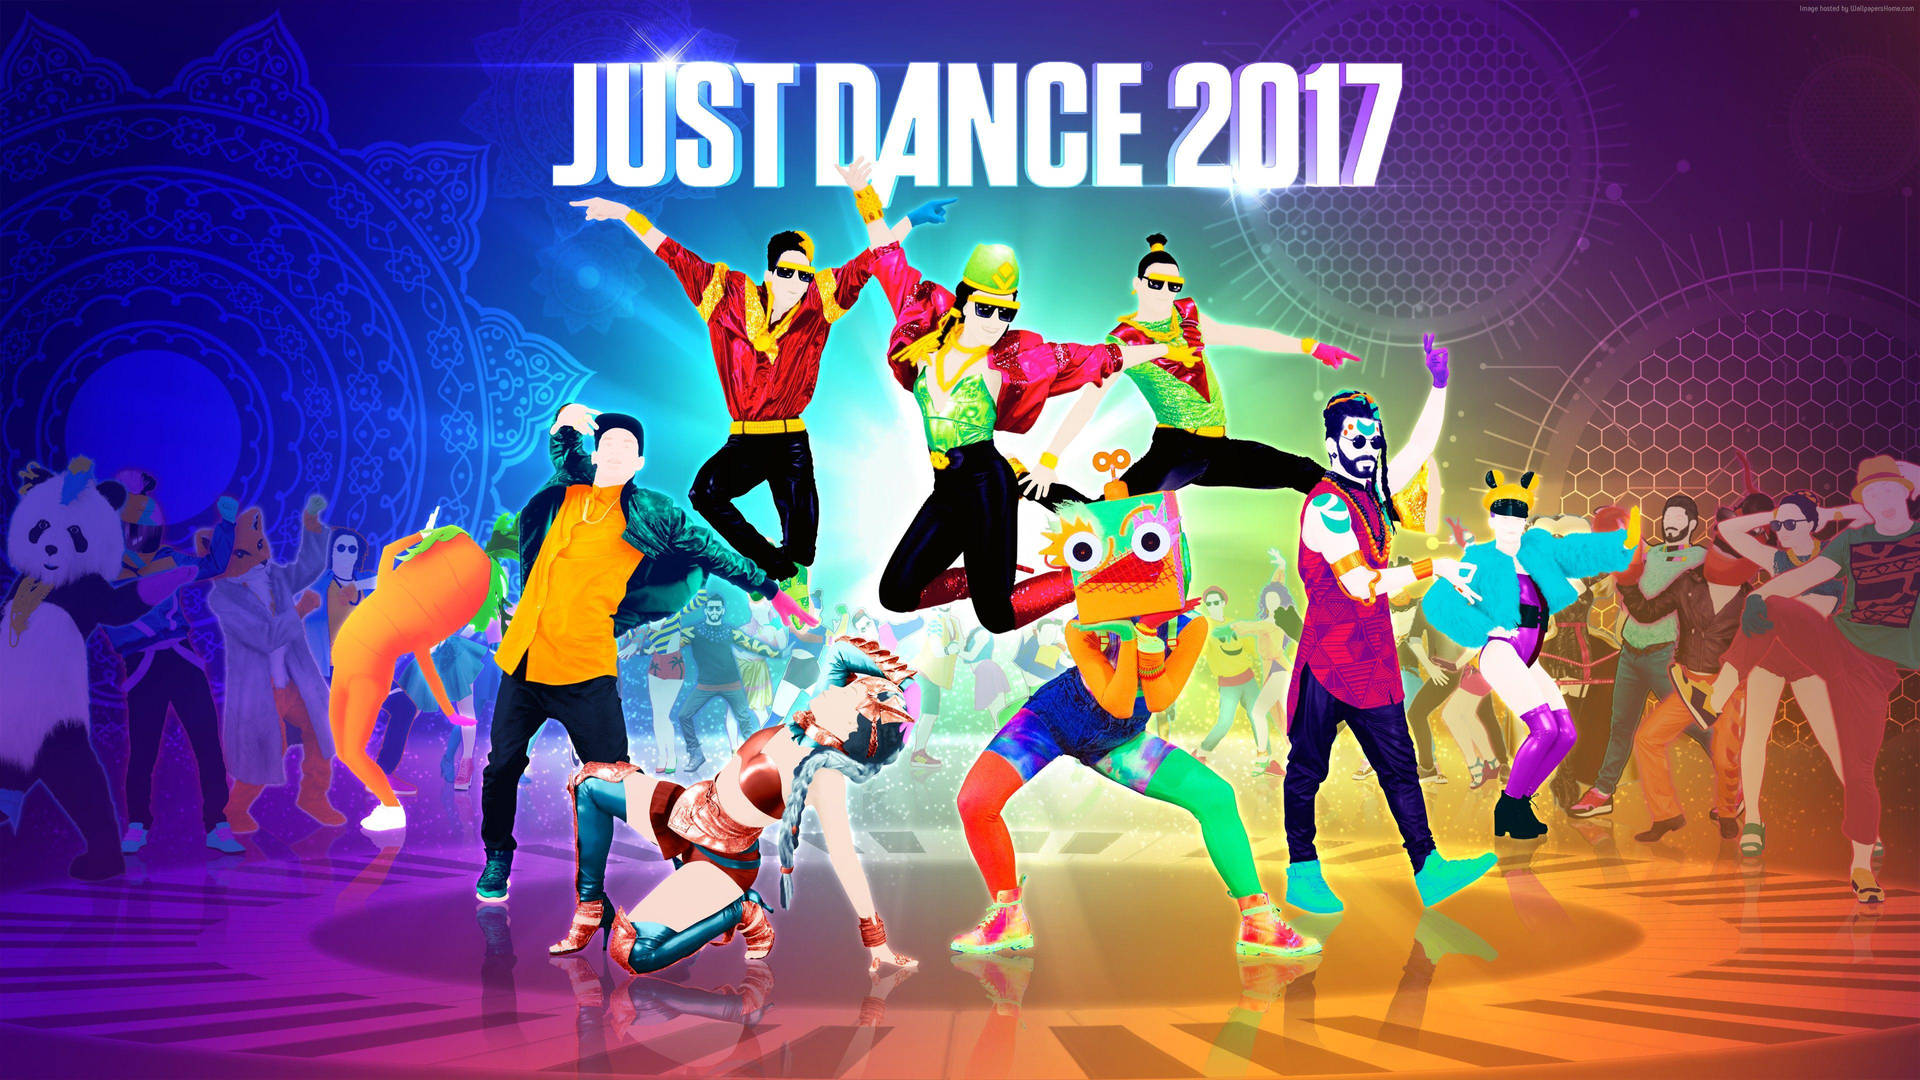 Just Dance 2017 Dancers On Piano Floor Wallpaper